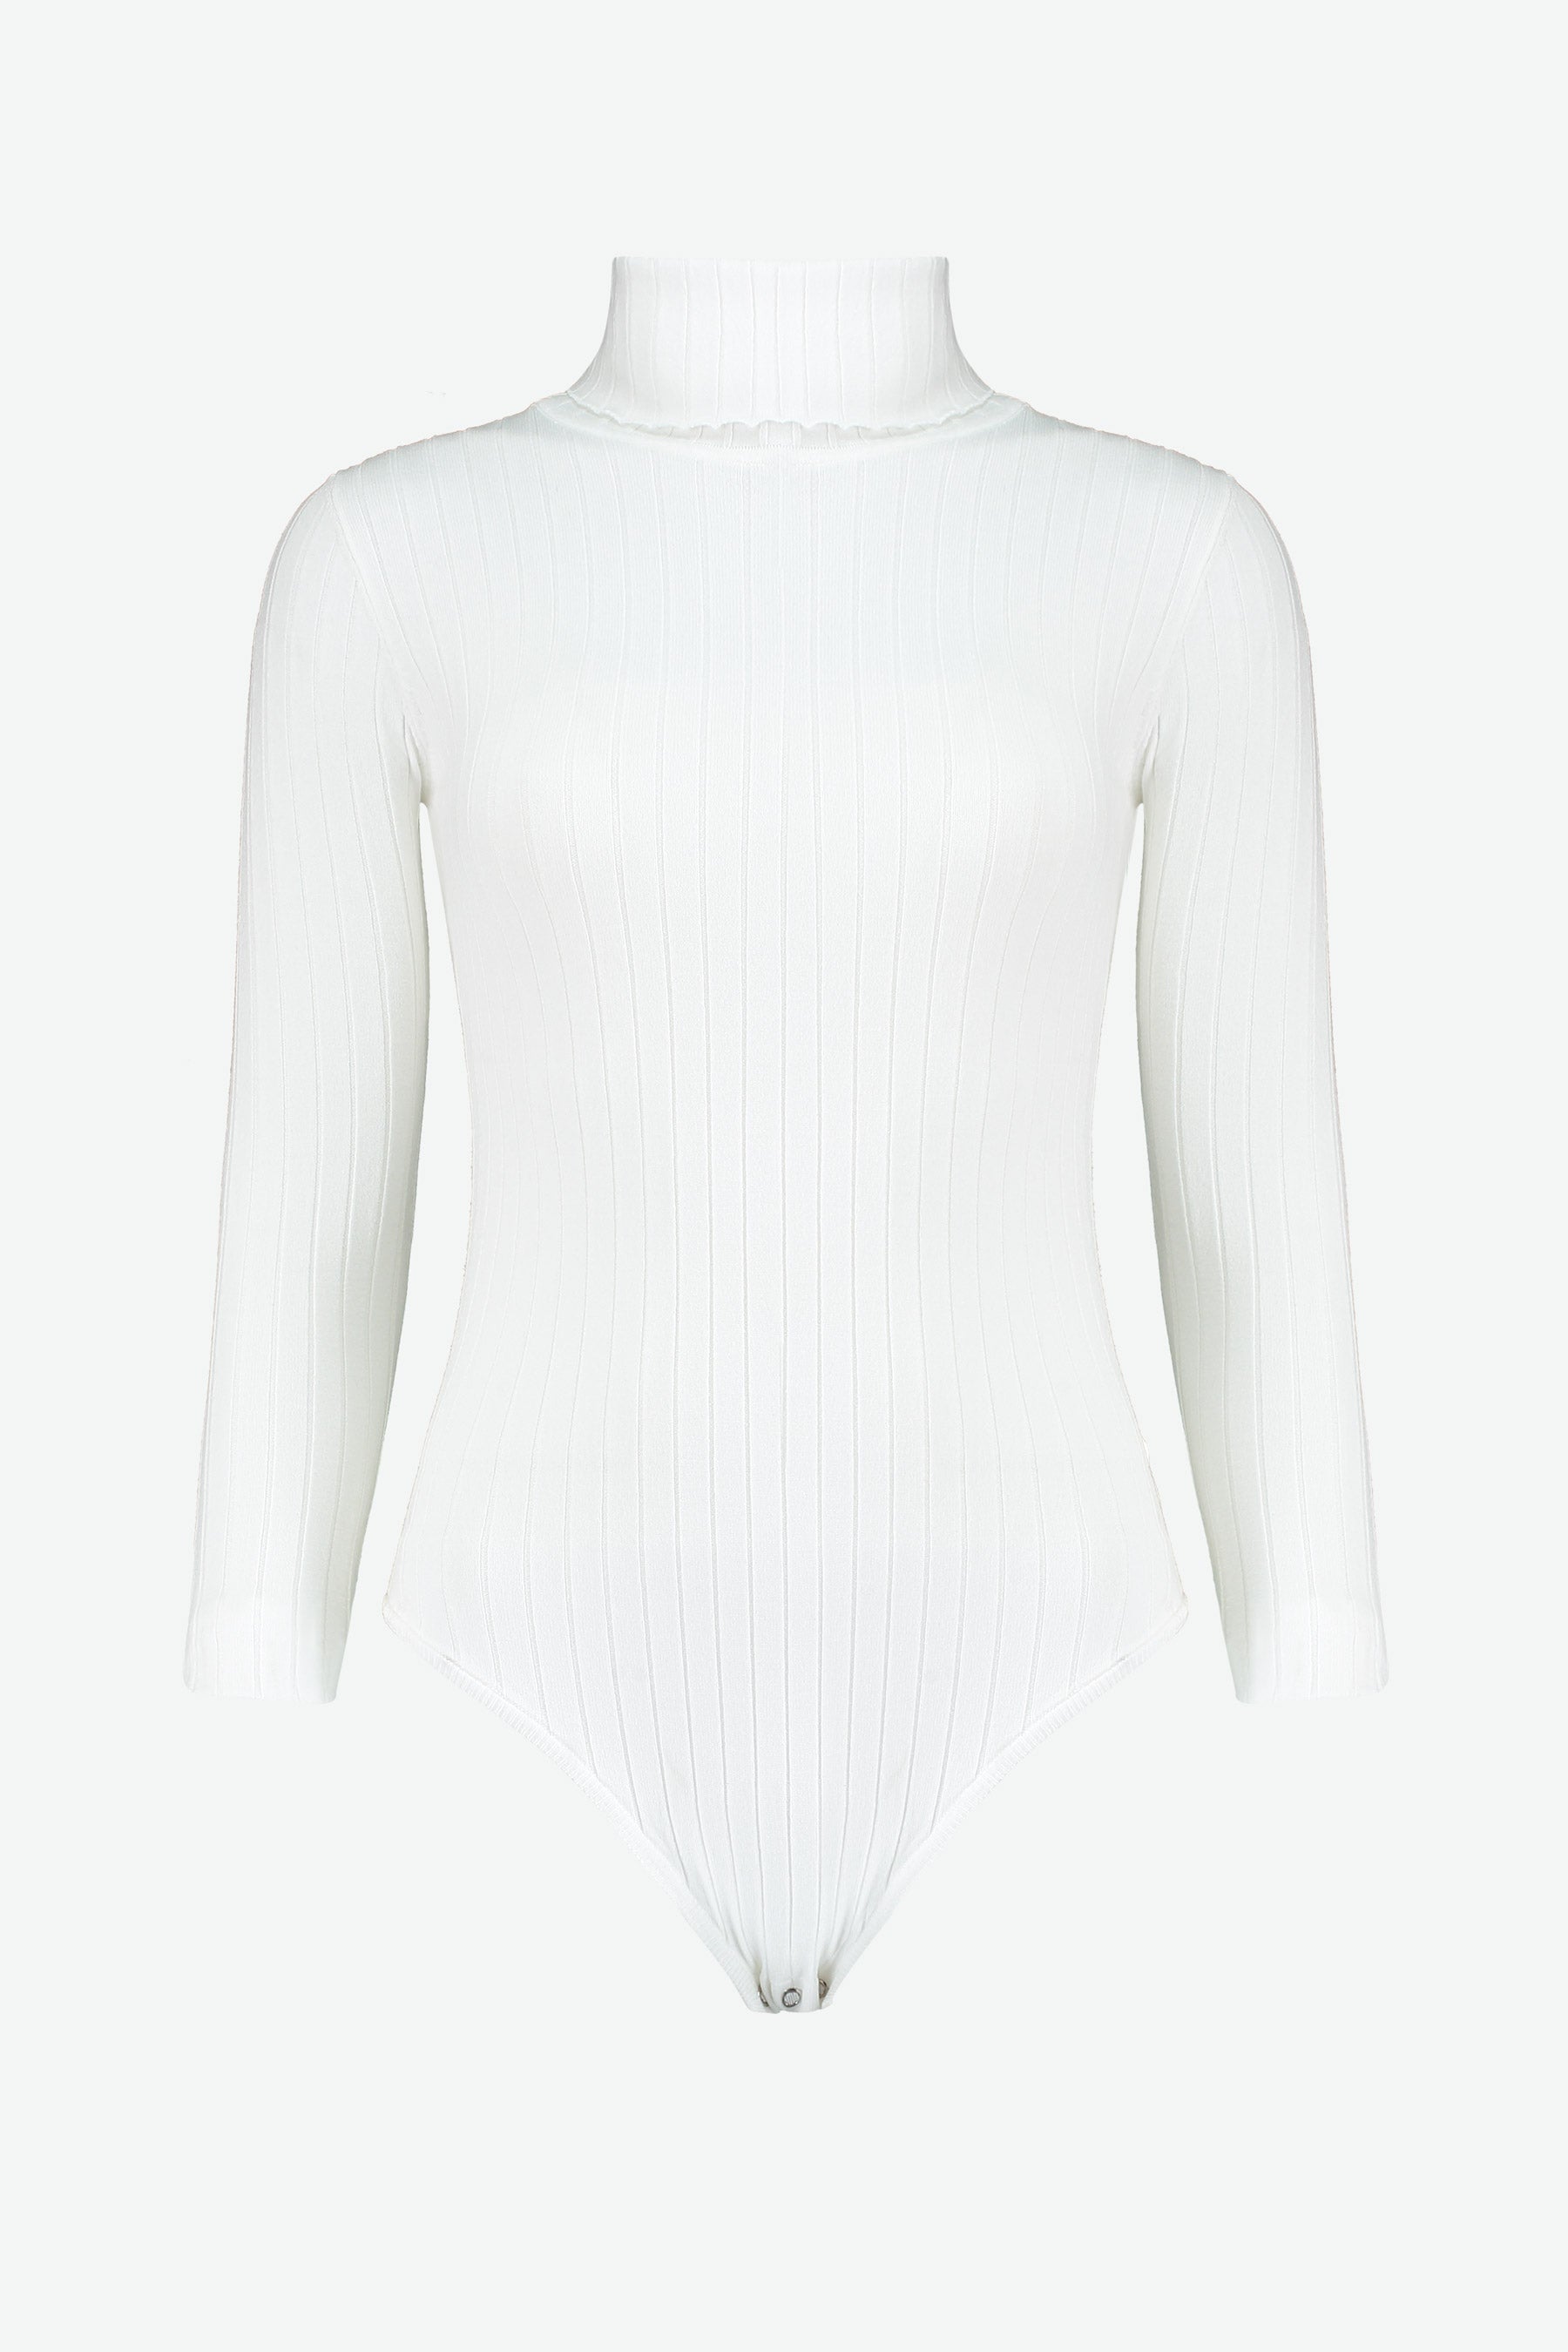 Coppi Bodysuit in Off-White